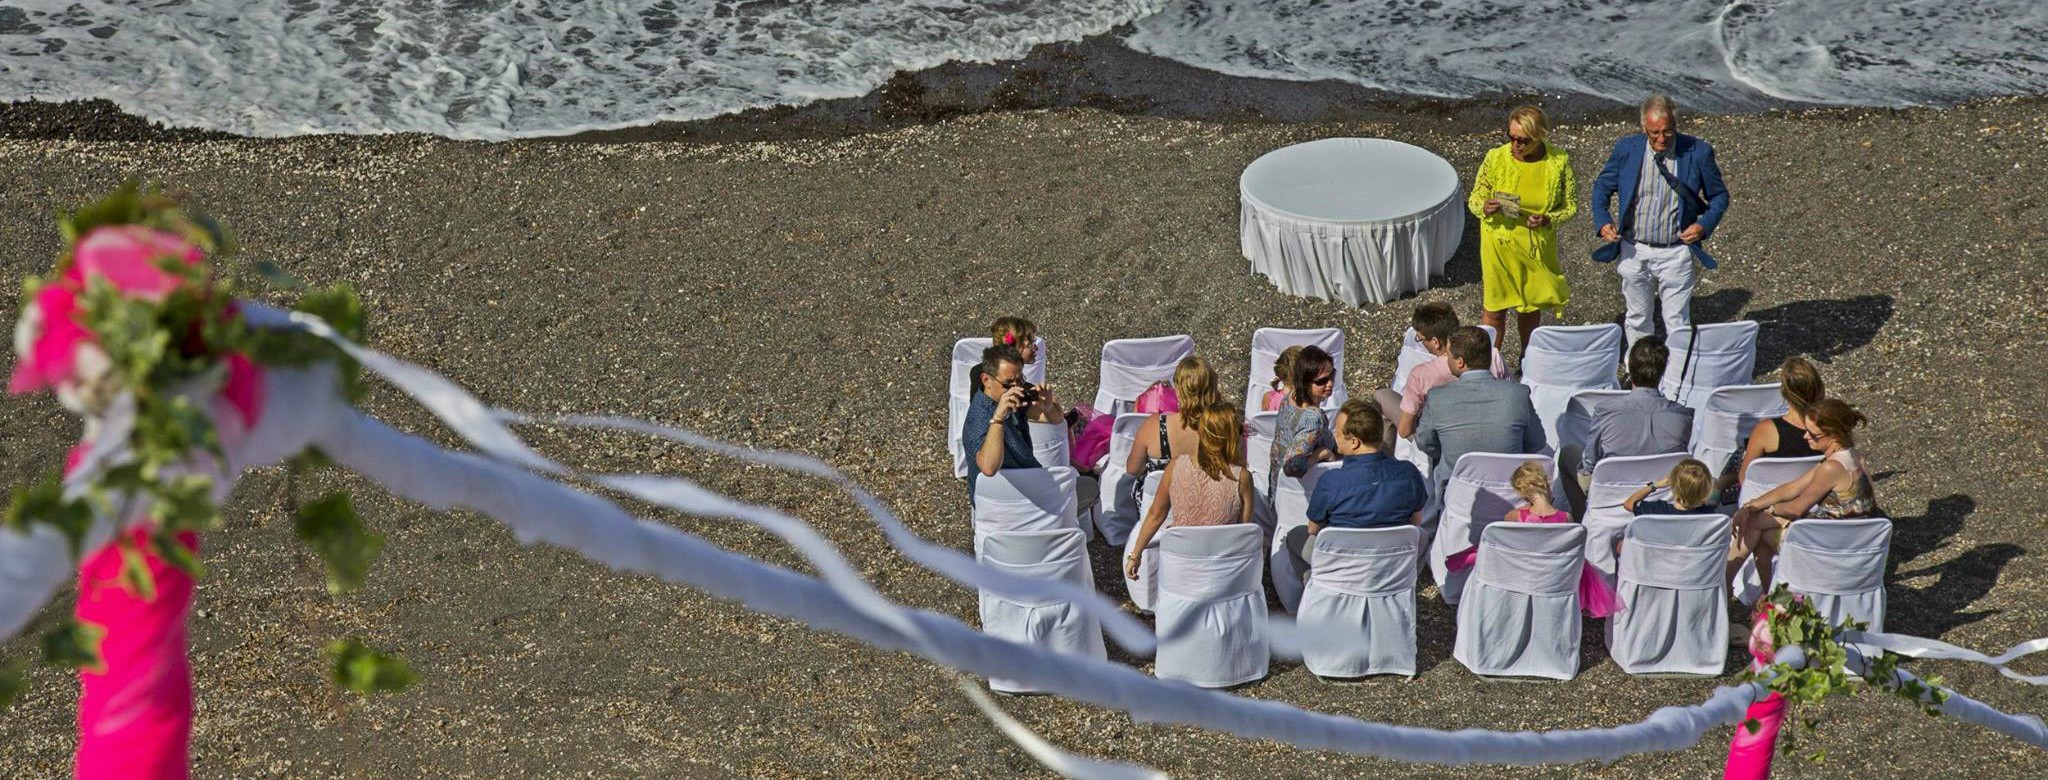 Book your wedding day in En Plo Boutique Suites Santorini